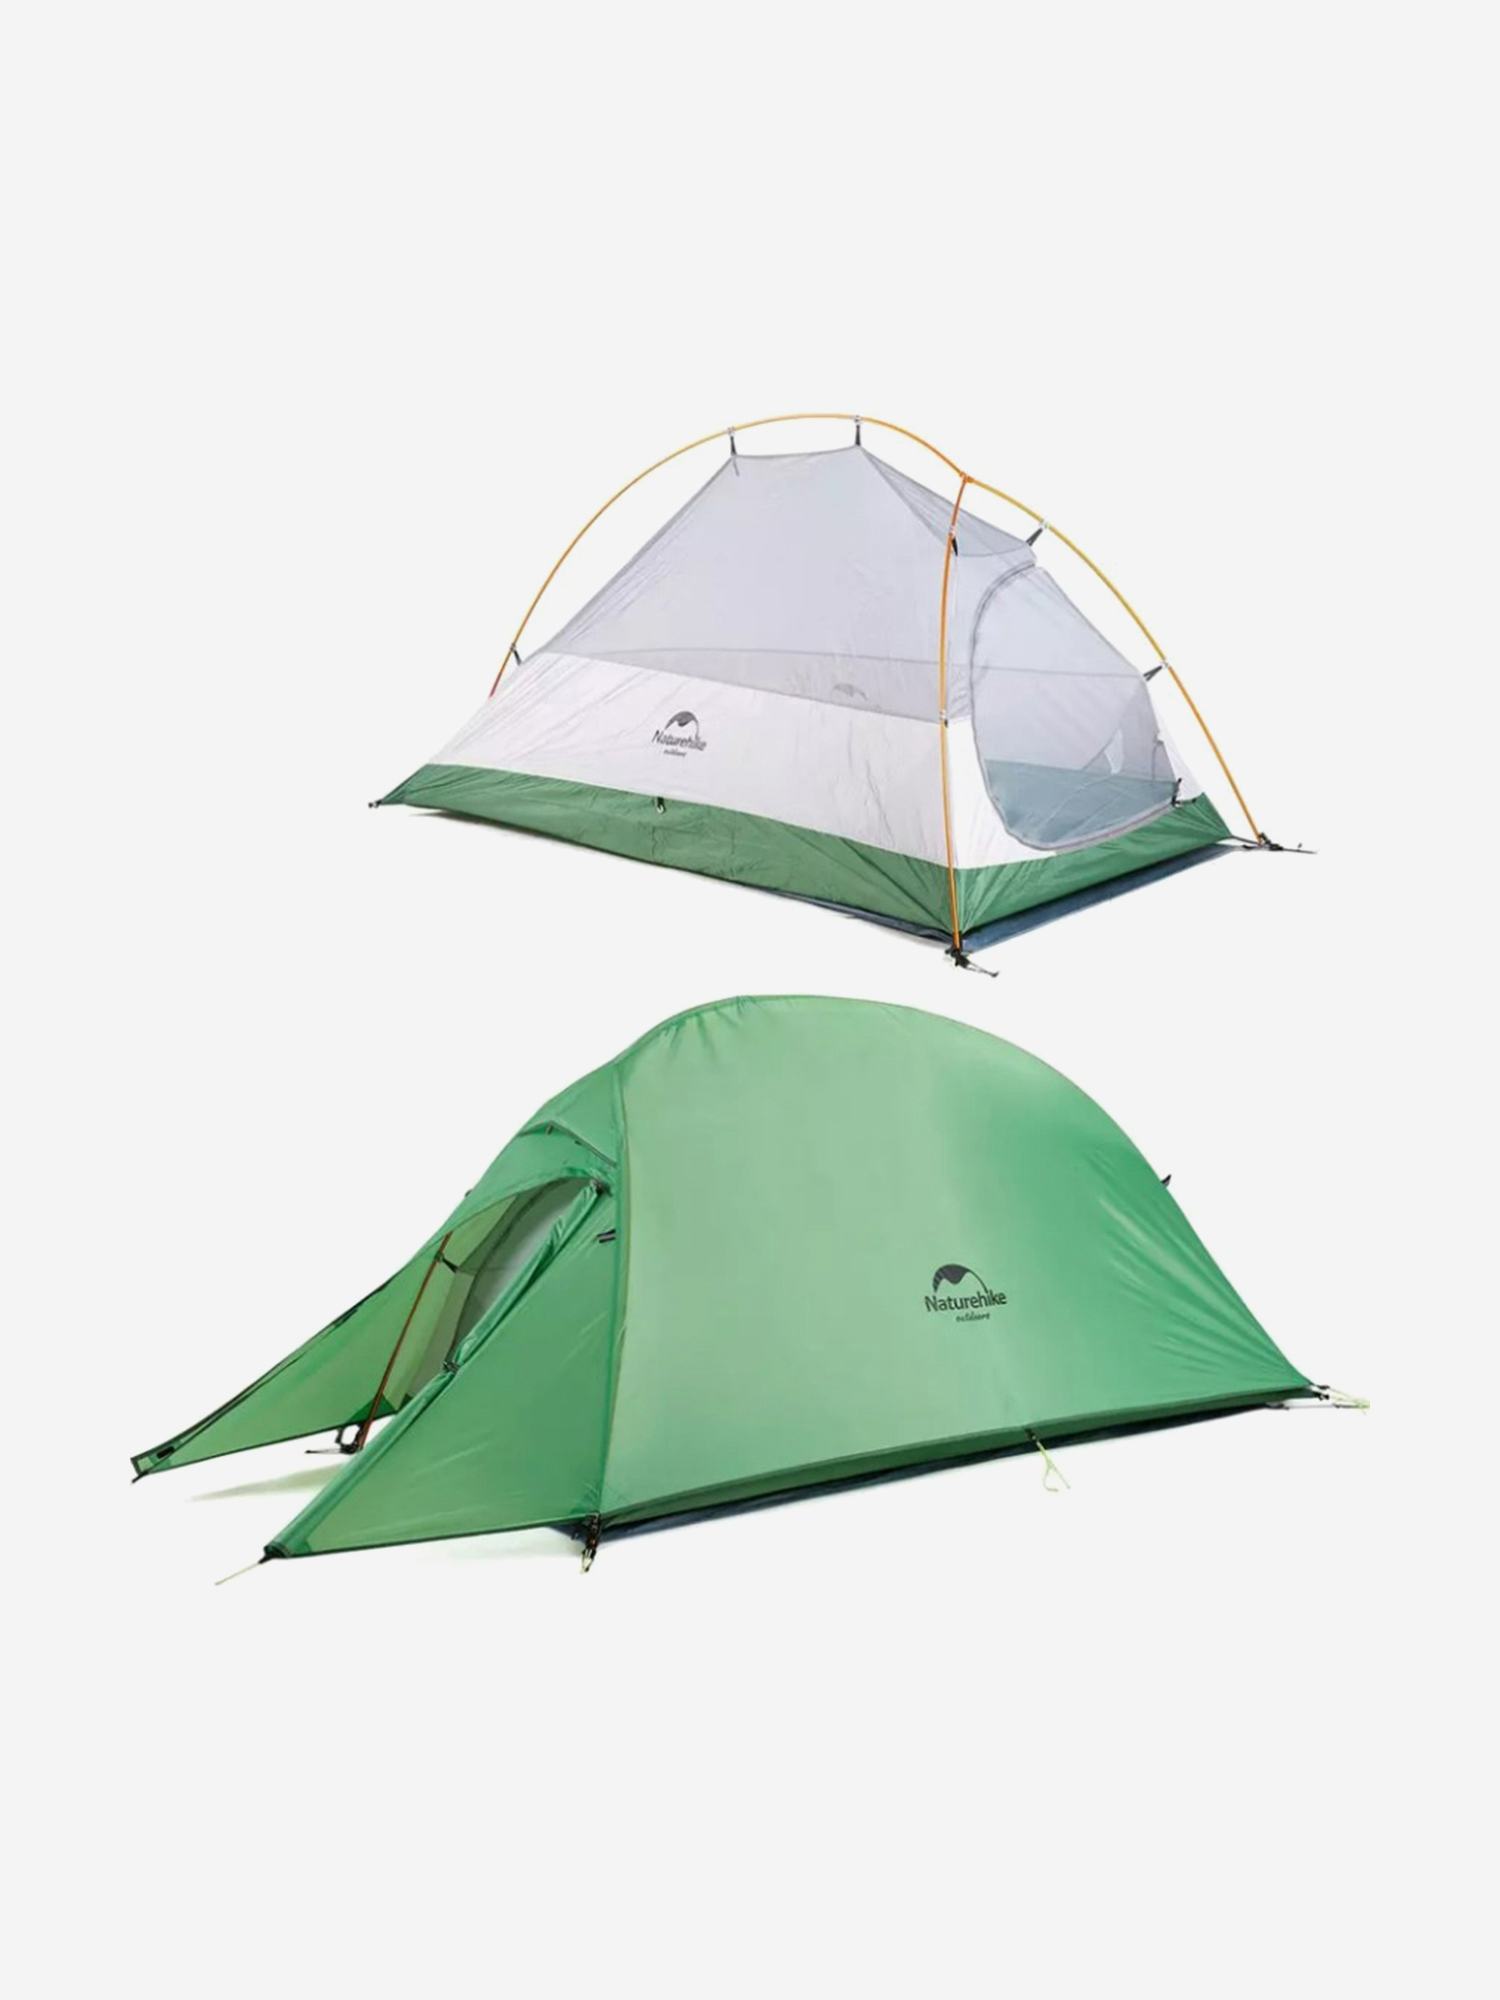 Палатка Naturehike Cloud Up 1-местная, алюминиевый каркас, сверхлегкая, зеленый, Зеленый палатка naturehike p plus 4 местная алюминиевый каркас зеленый зеленый